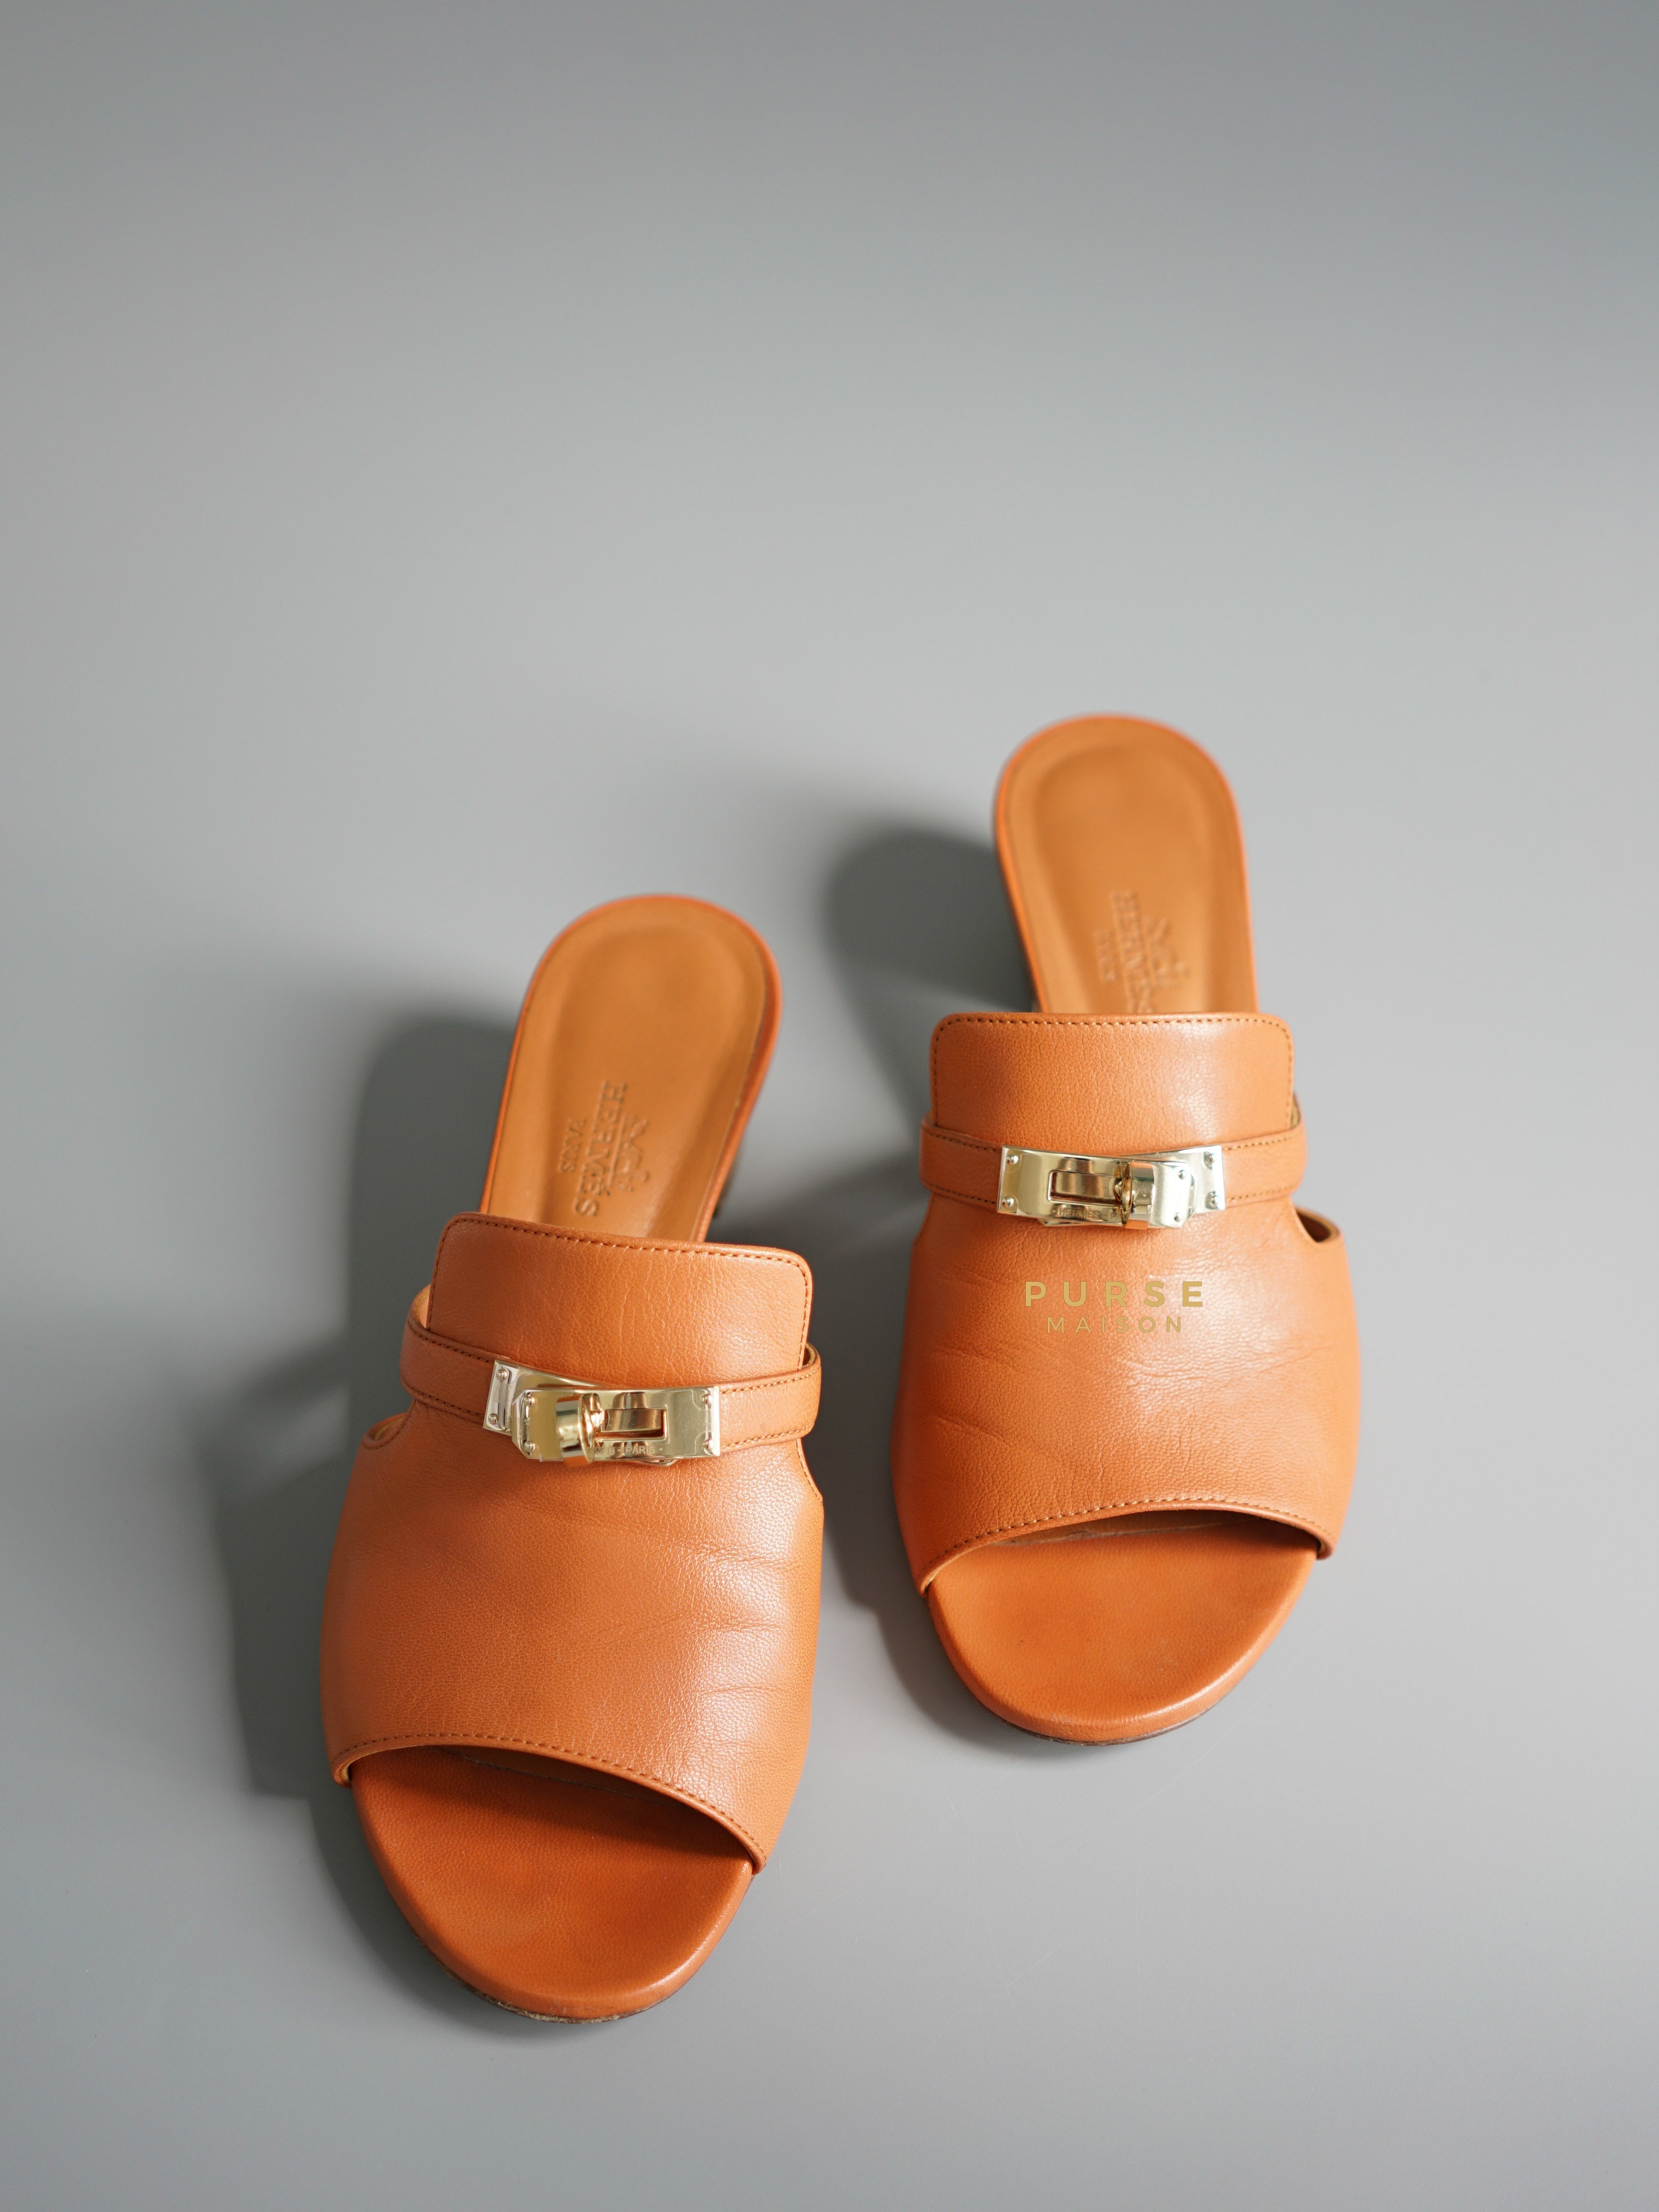 Hermes Kelly Candy Marron Glai Sandals Size 36.5 EU | Purse Maison Luxury Bags Shop